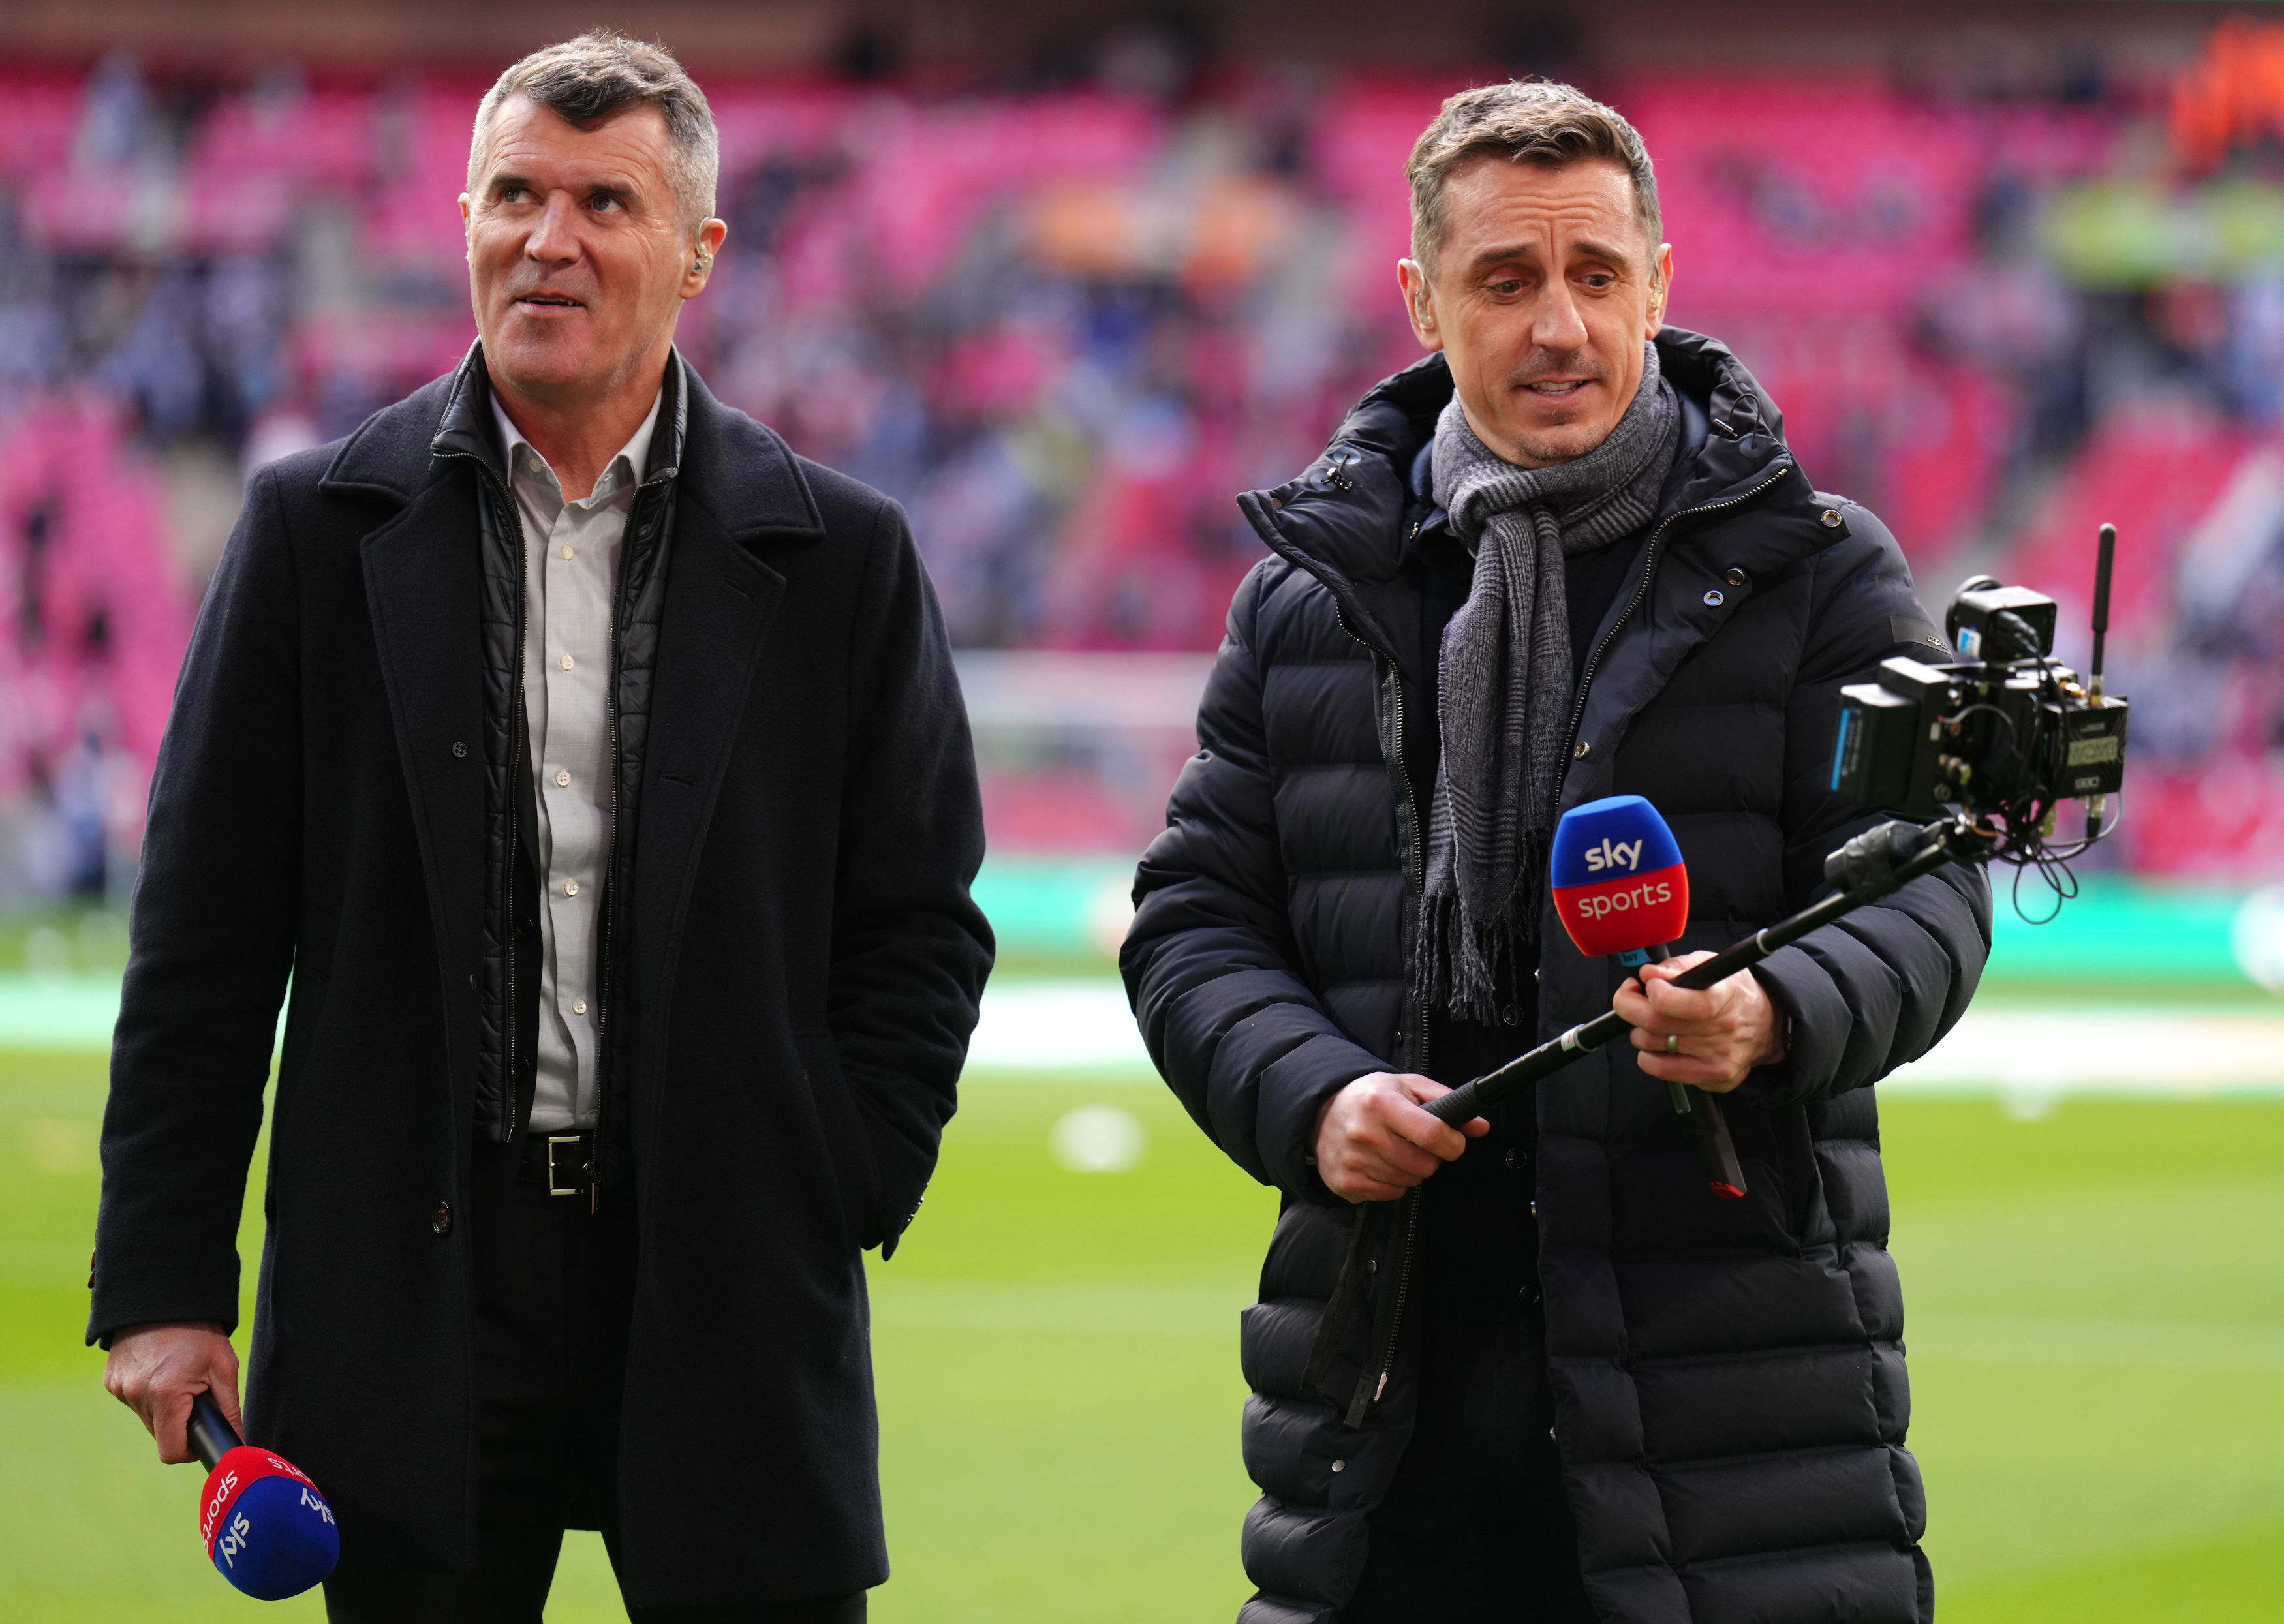 Roy Keane und Gary Neville gehören derzeit zu den heftigen Kritikern von Man Utd